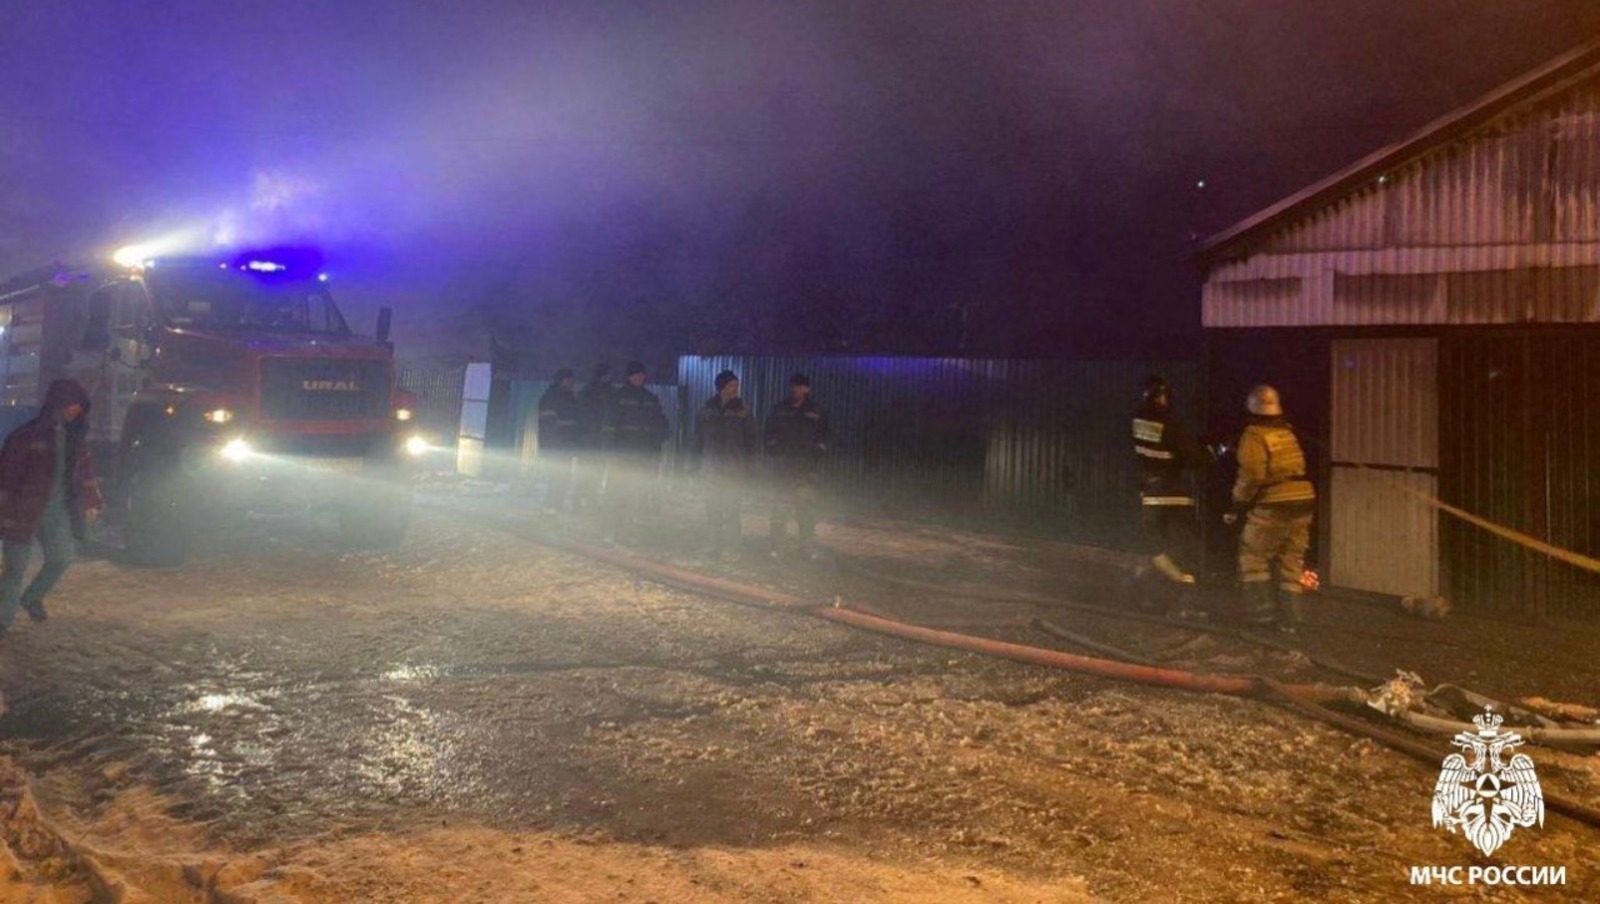 В СКР по Башкирии сообщили подробности смертельного пожара в Матвеевке, где сгорели 7 человек: двоих детей спас отец